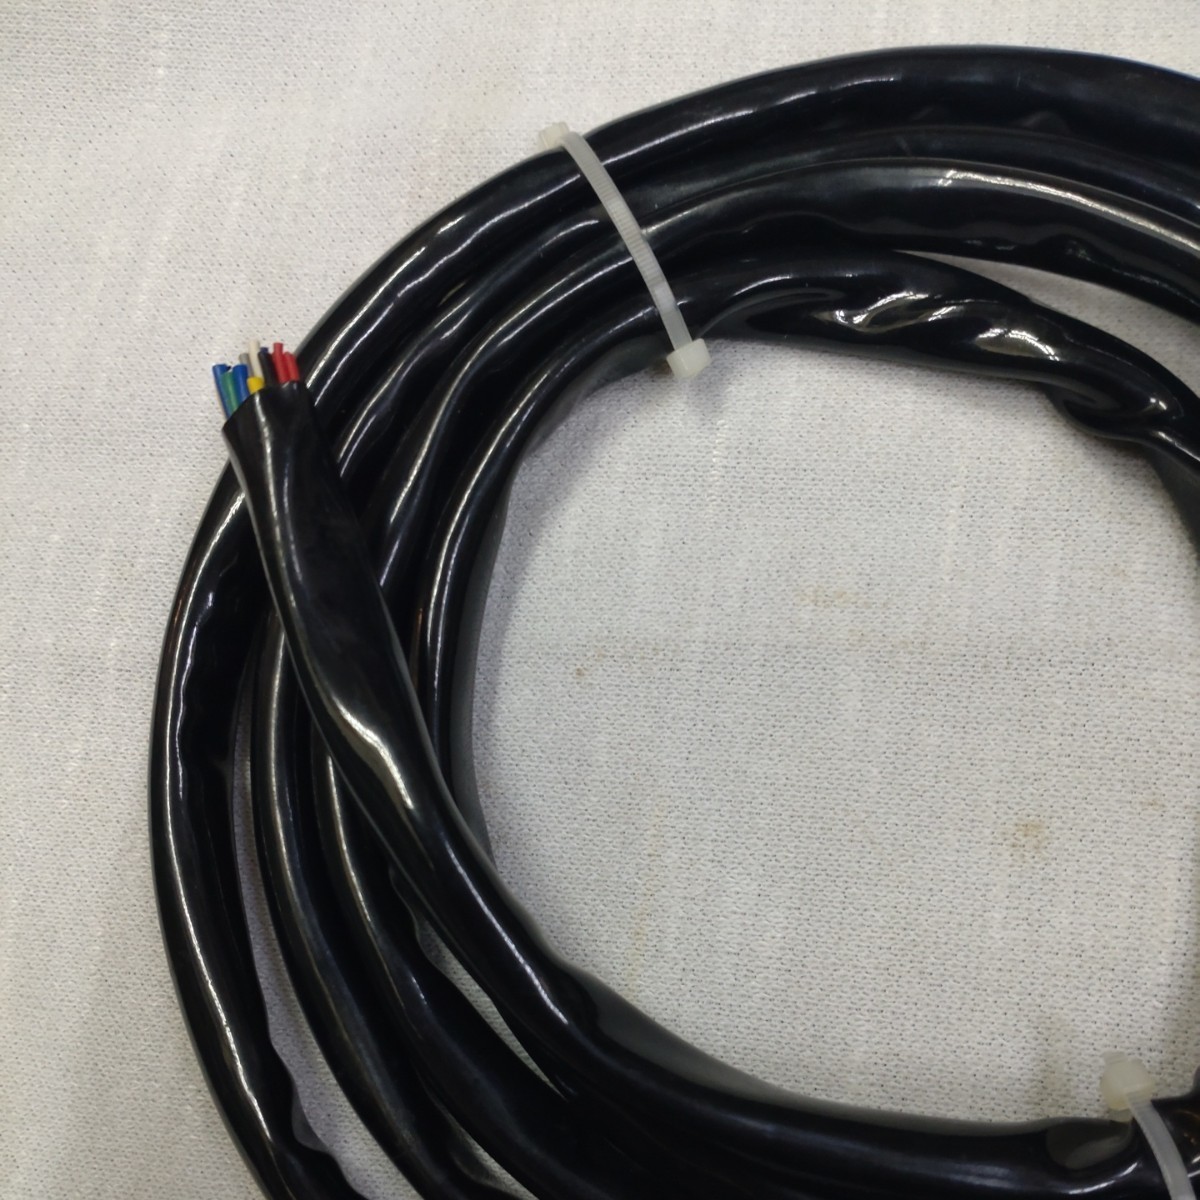 24 сердцевина ( чёрный цвет защита камера ) кабель A линия длина 190cm * чёрный цвет защита камера наружный диаметр : примерно Φ12mm б/у товар 